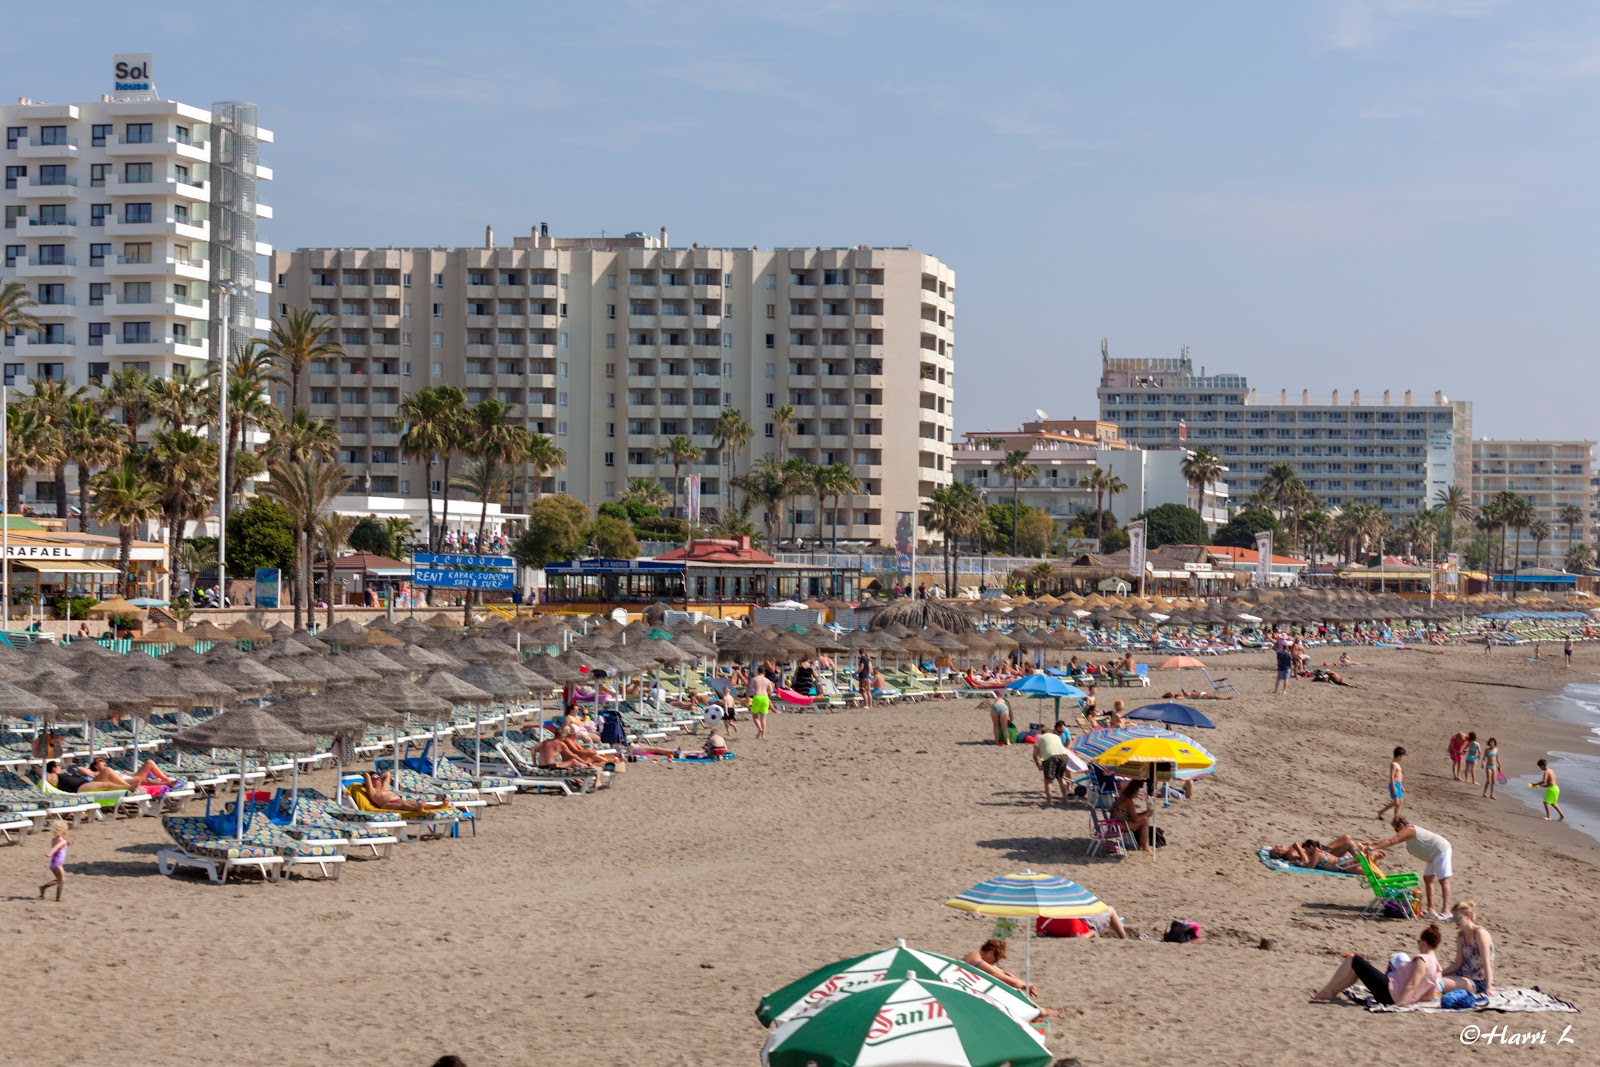 Foto af Playa Arroyo de la Miel - populært sted blandt afslapningskendere